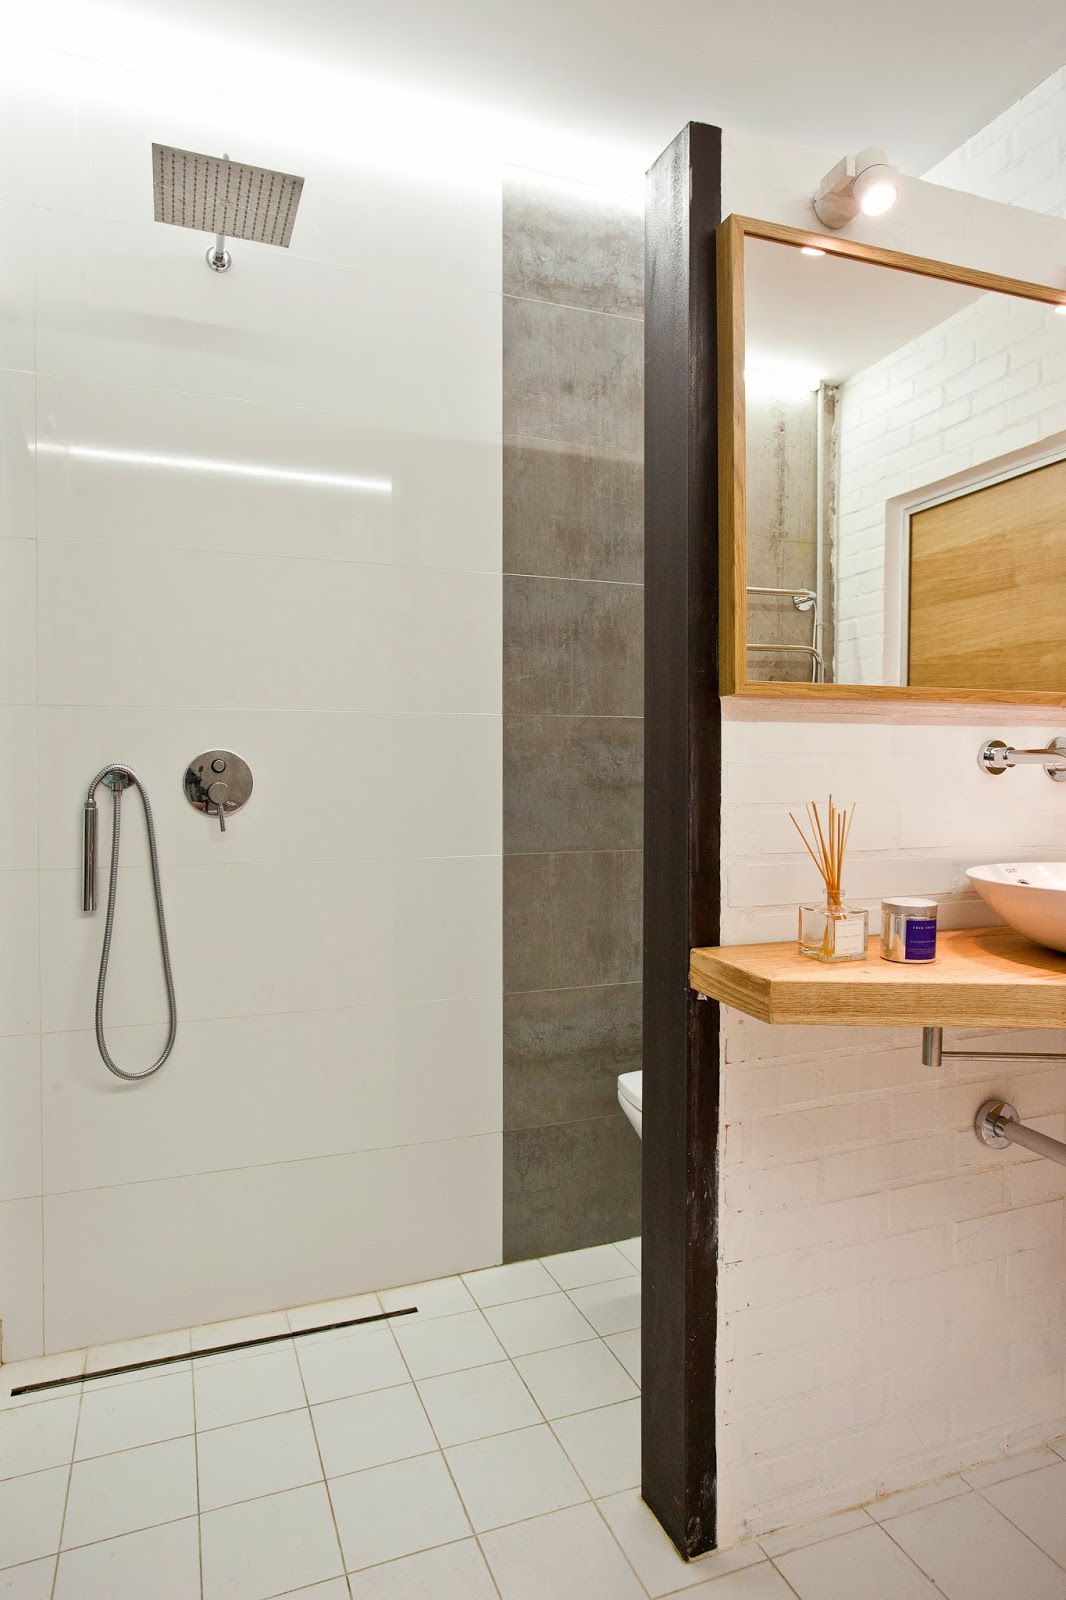 Calcestruzzo all'interno di un appartamento creativo: il bagno